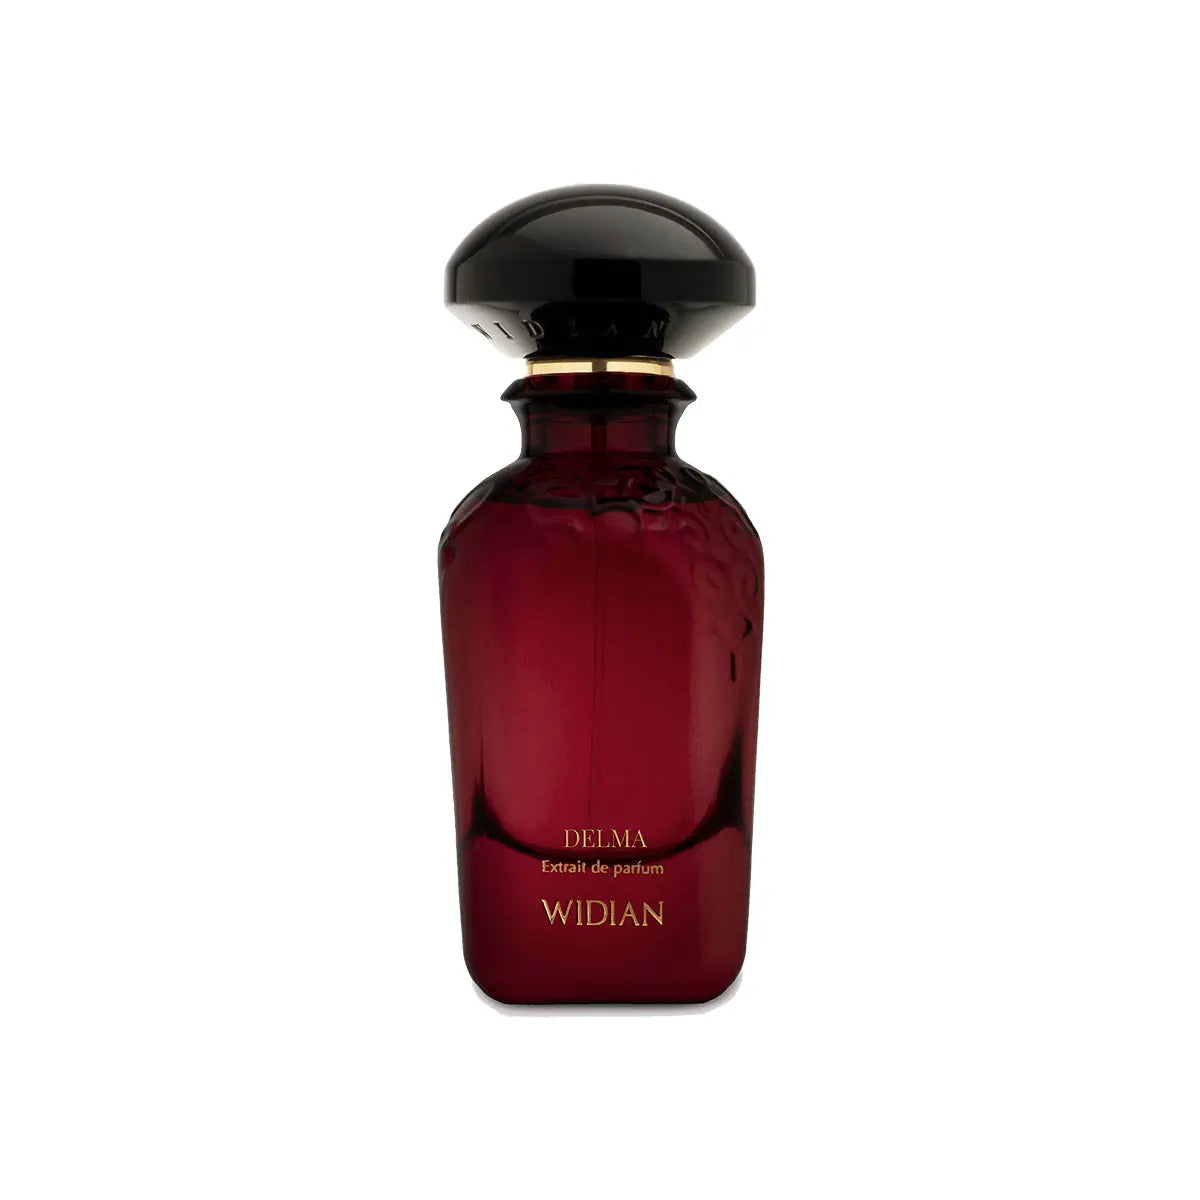 Extracto de perfume Widian Delma - 50 ml